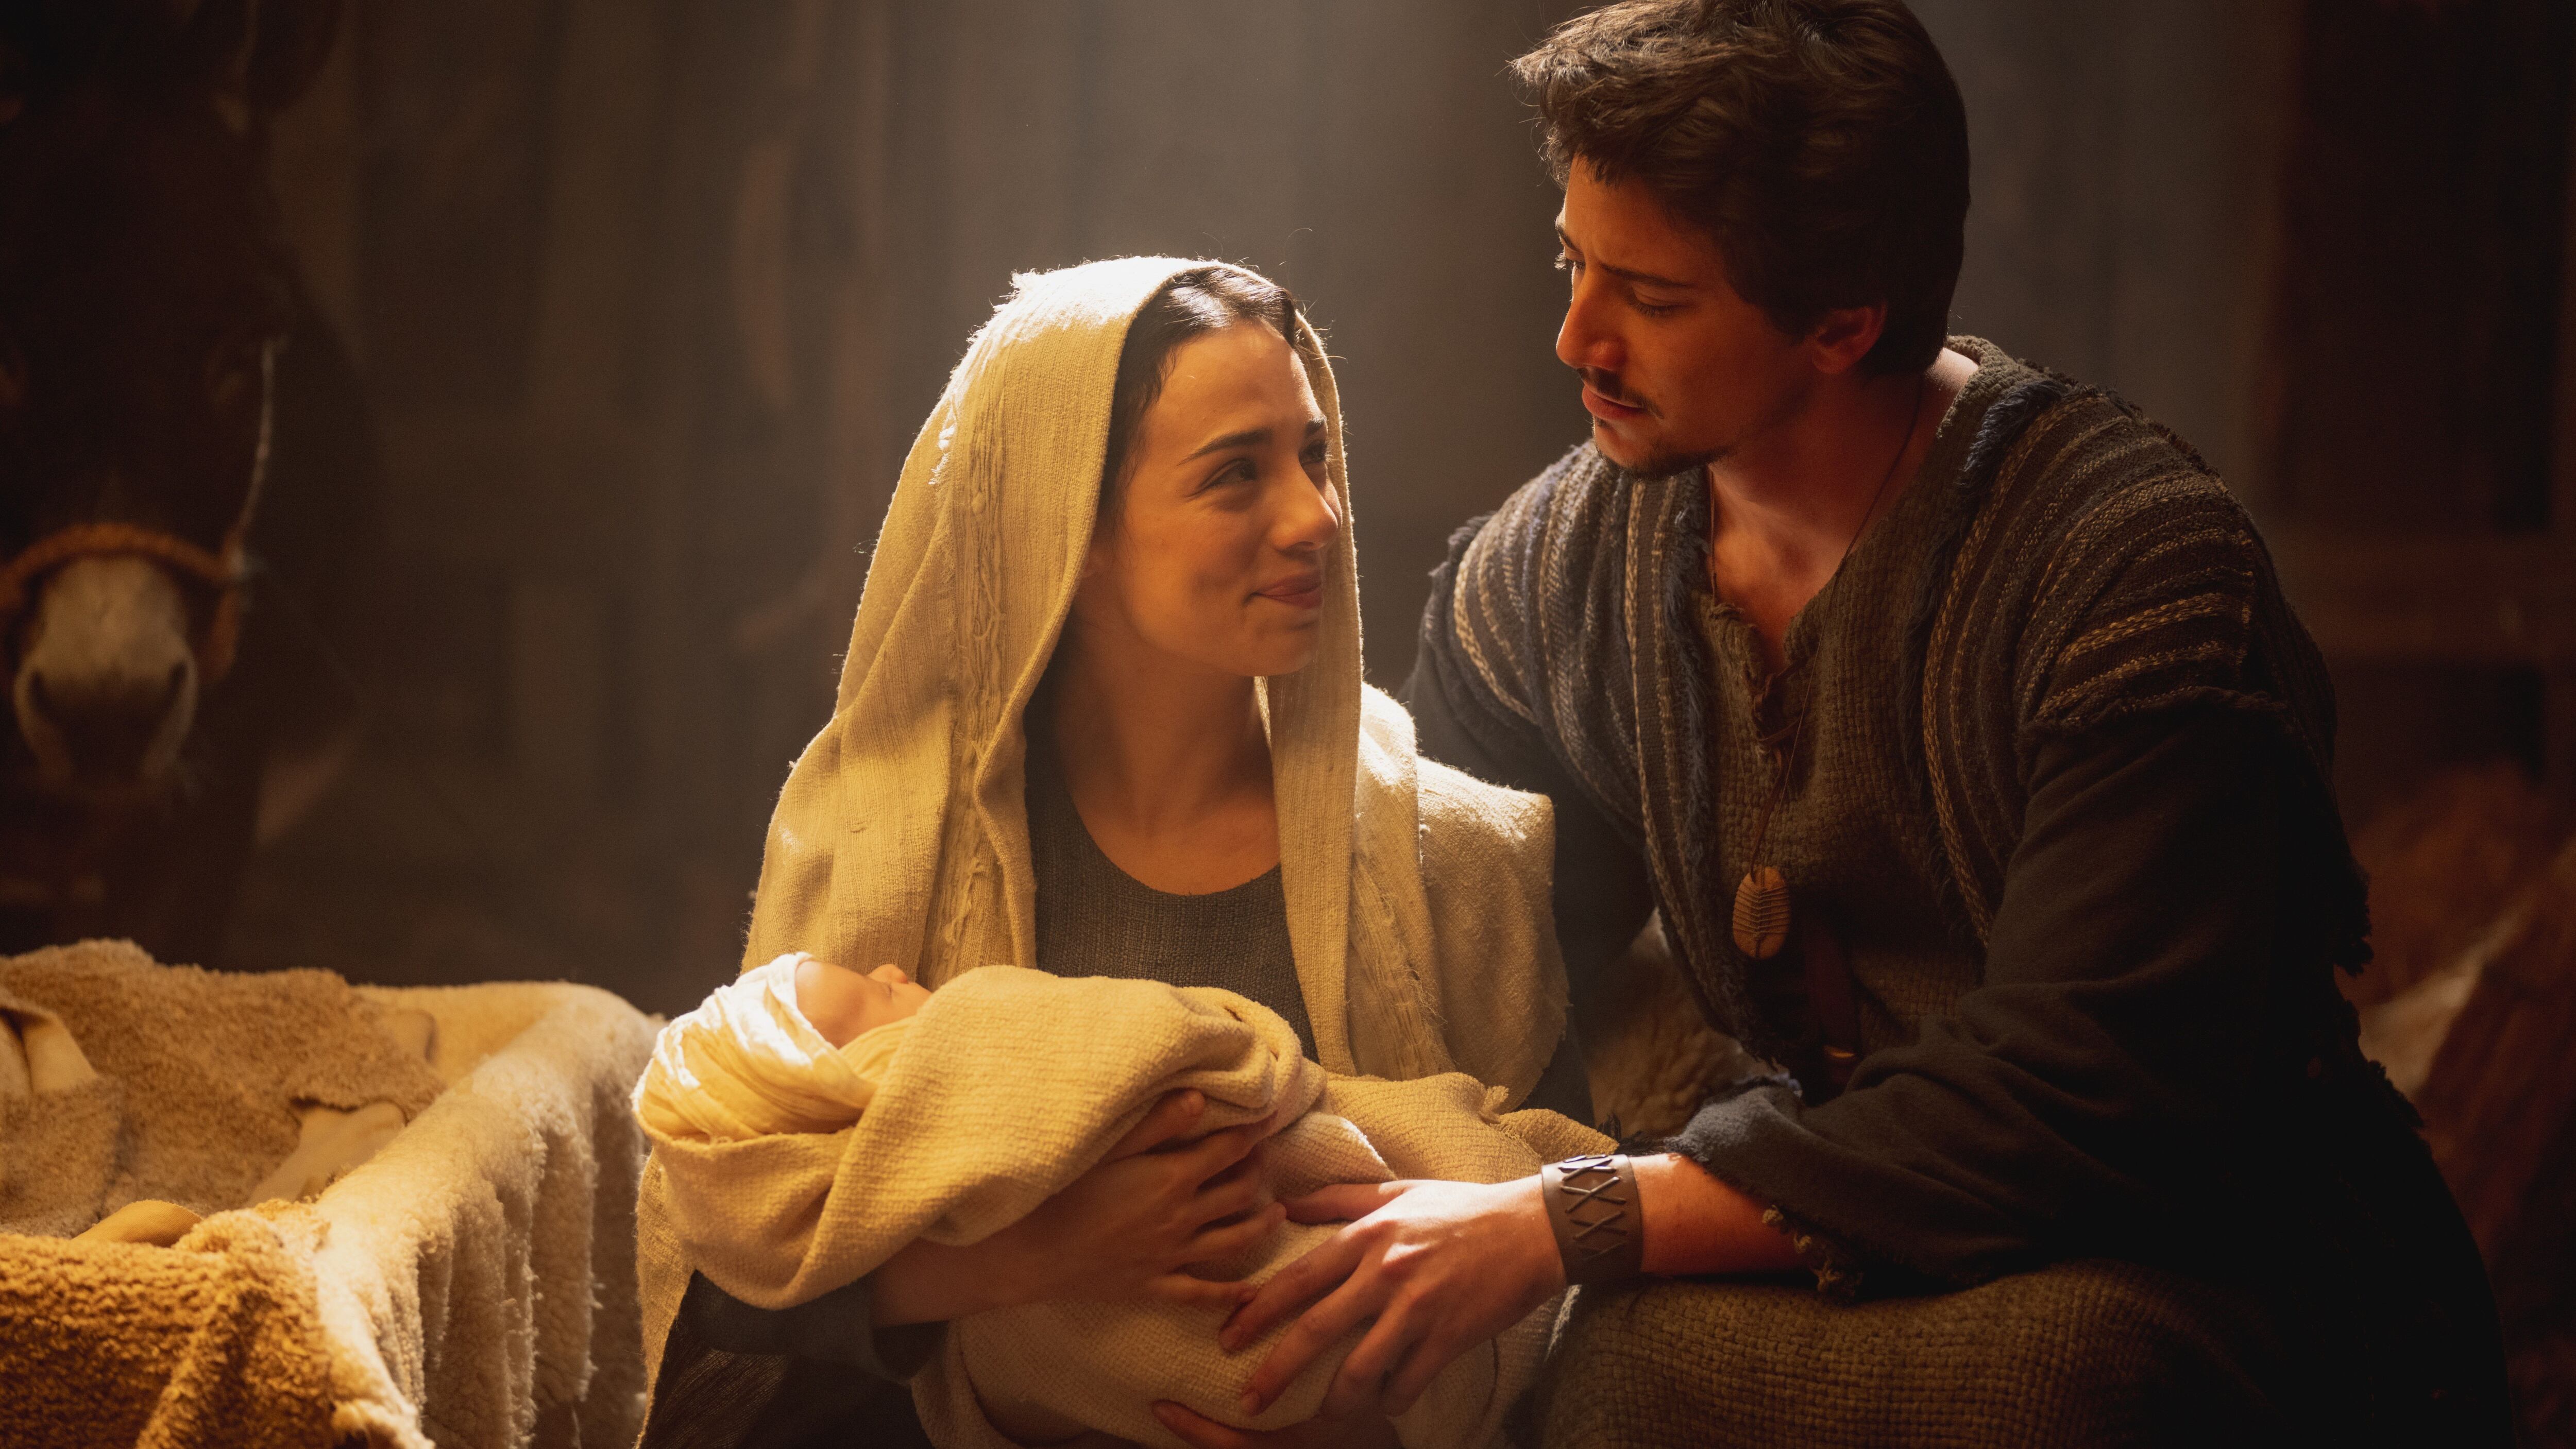 El musical bíblico es descrito como una versión fantástica e ideal de la Natividad cristiana. (Créditos: Sony Pictures).